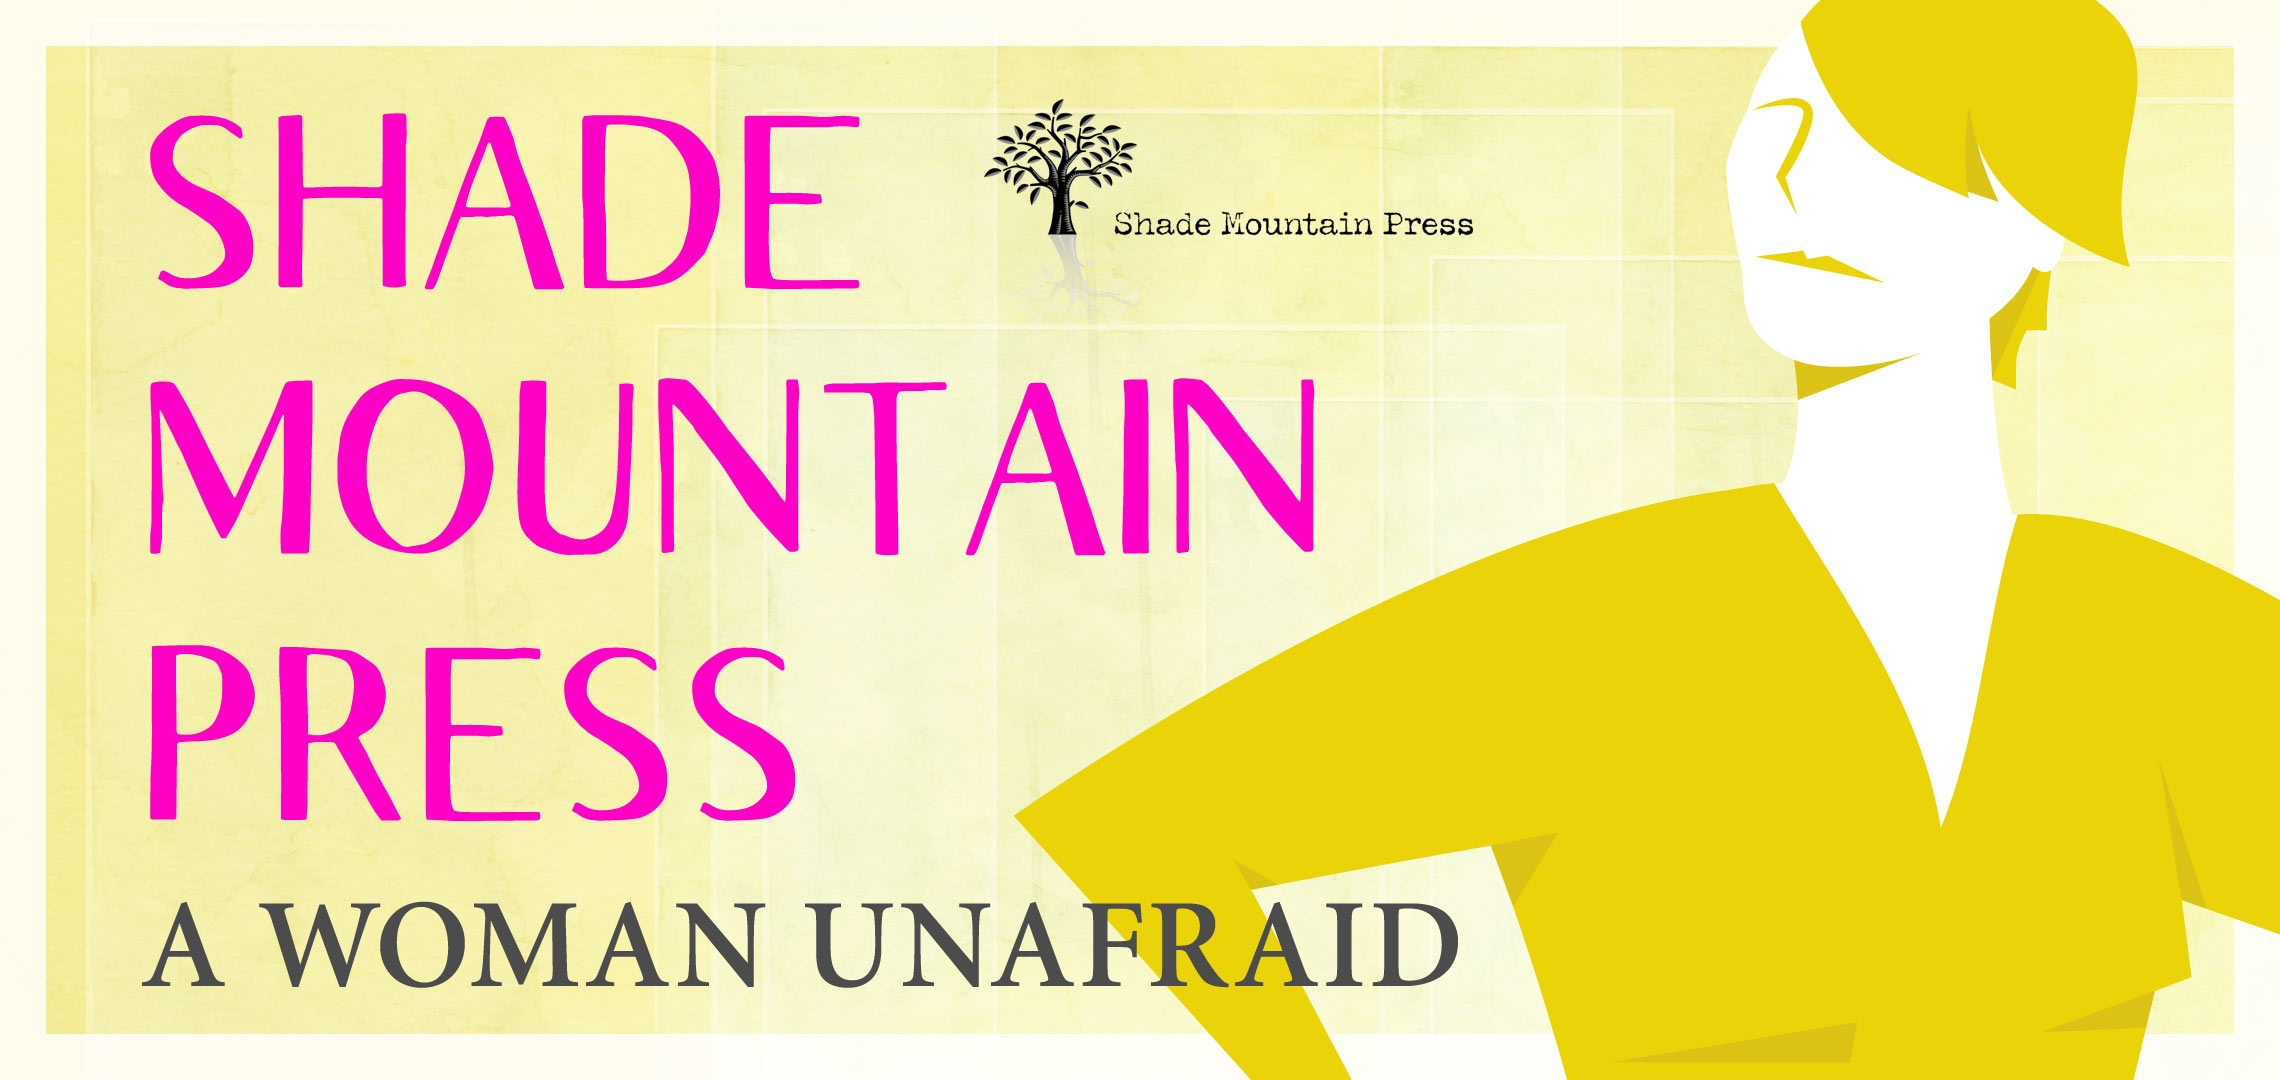 Shade Mountain Press